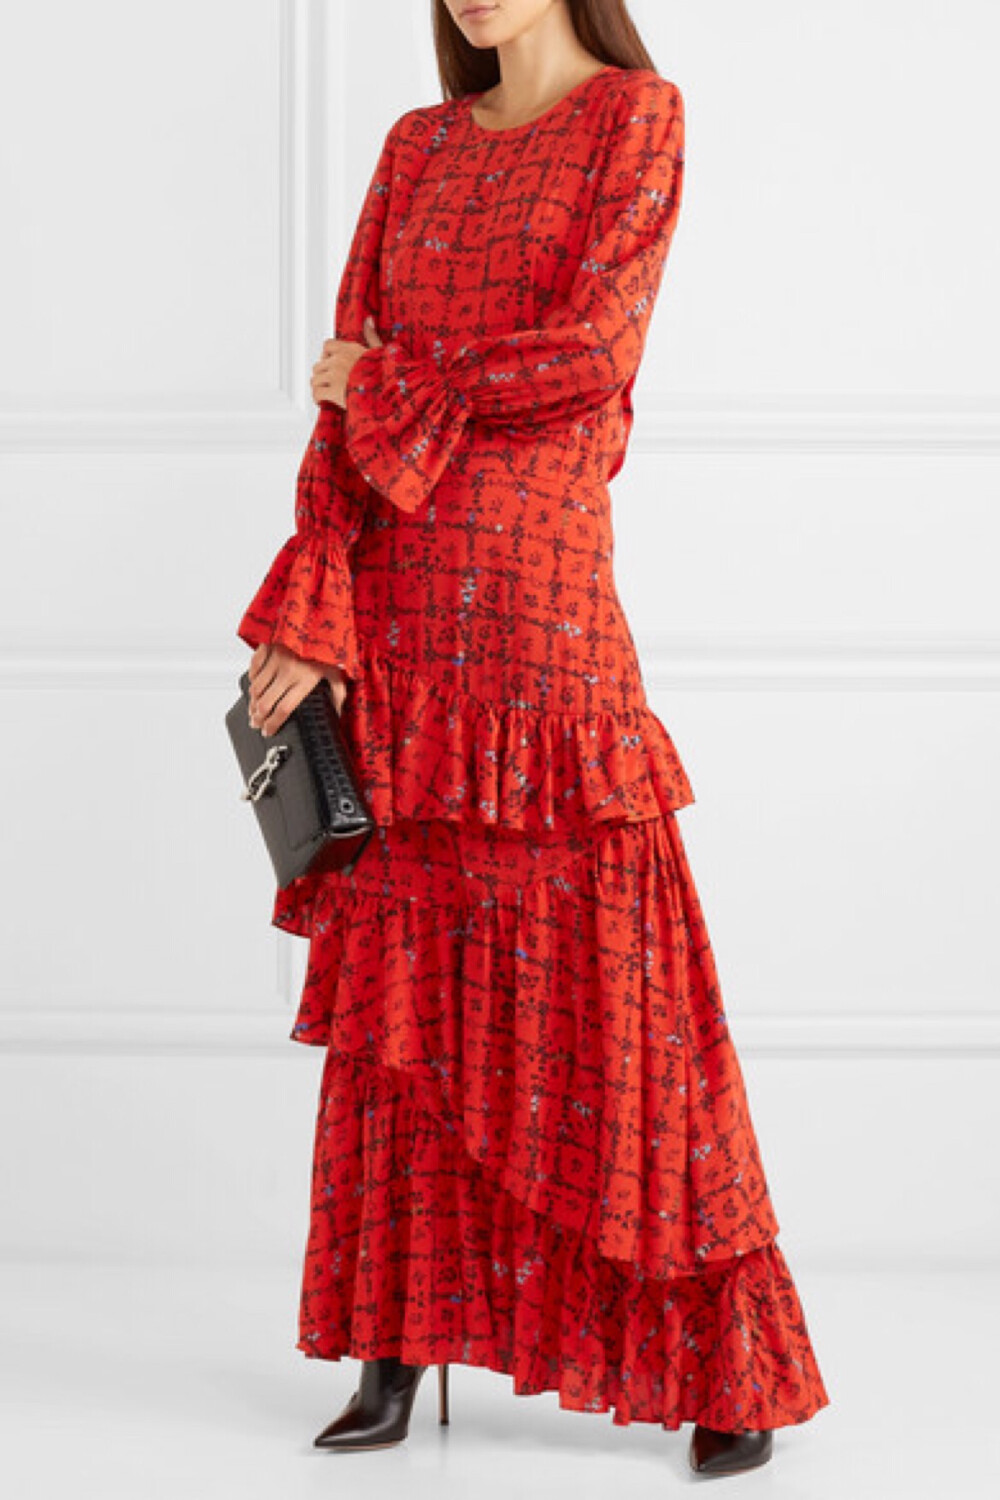 拥有 Preen Line 的这款 “Amina” 连衣裙可令你立即乘上本季超长版单品的时尚热潮。它采用缀满碎花印花的双绉制成，分层式裙身则款款垂落。不妨与光滑亮泽的黑色配饰一同搭配，衬托其艳红色调。